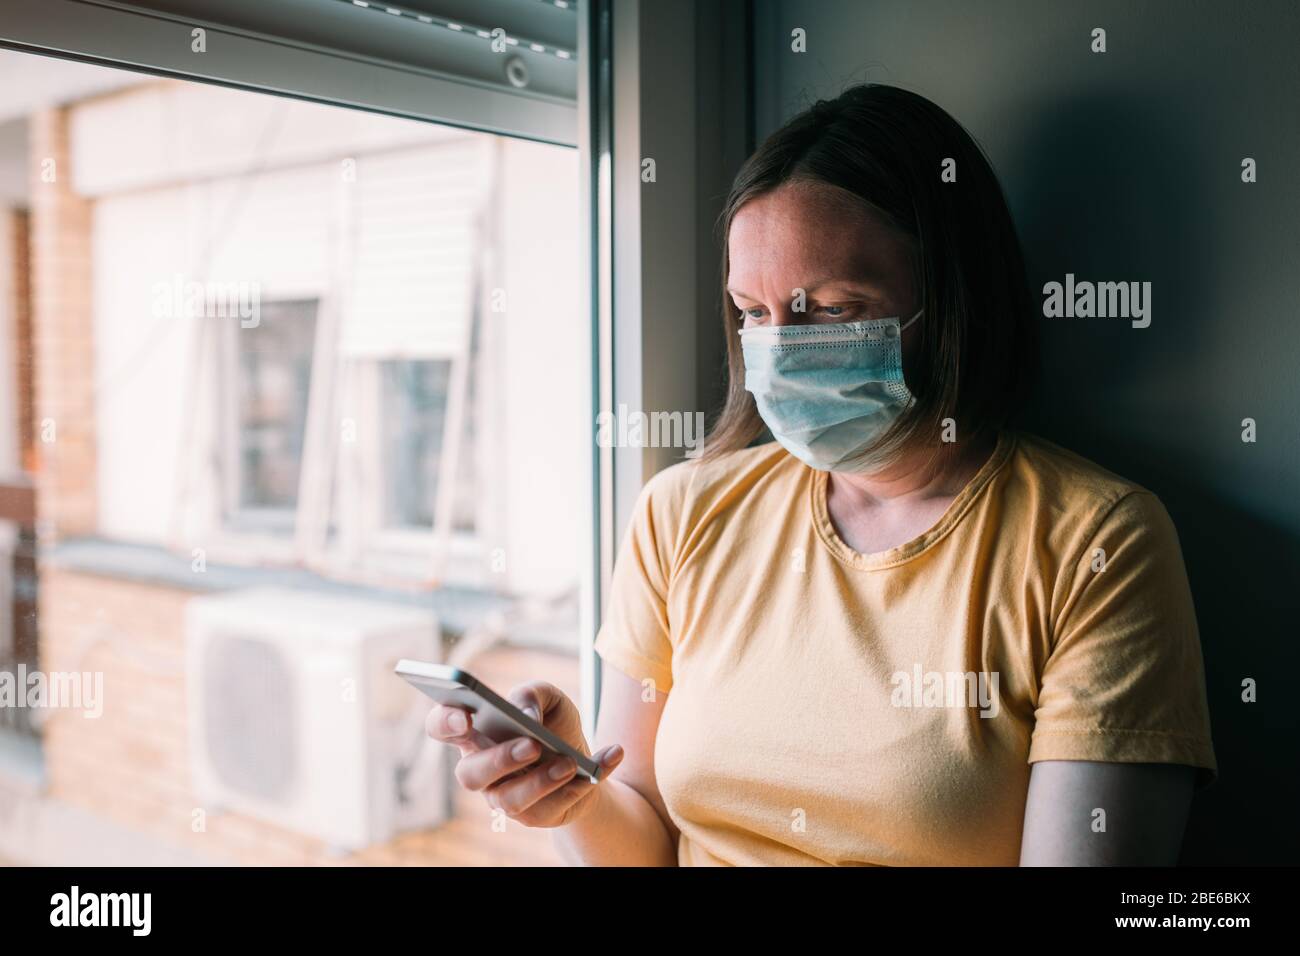 Frau in Selbstisolation während des Virus-Ausbruchs mit dem Mobiltelefon. Besorgte weibliche Person mit schützender chirurgischer Maske, hält Smartphone im Aufenthalt bei h Stockfoto